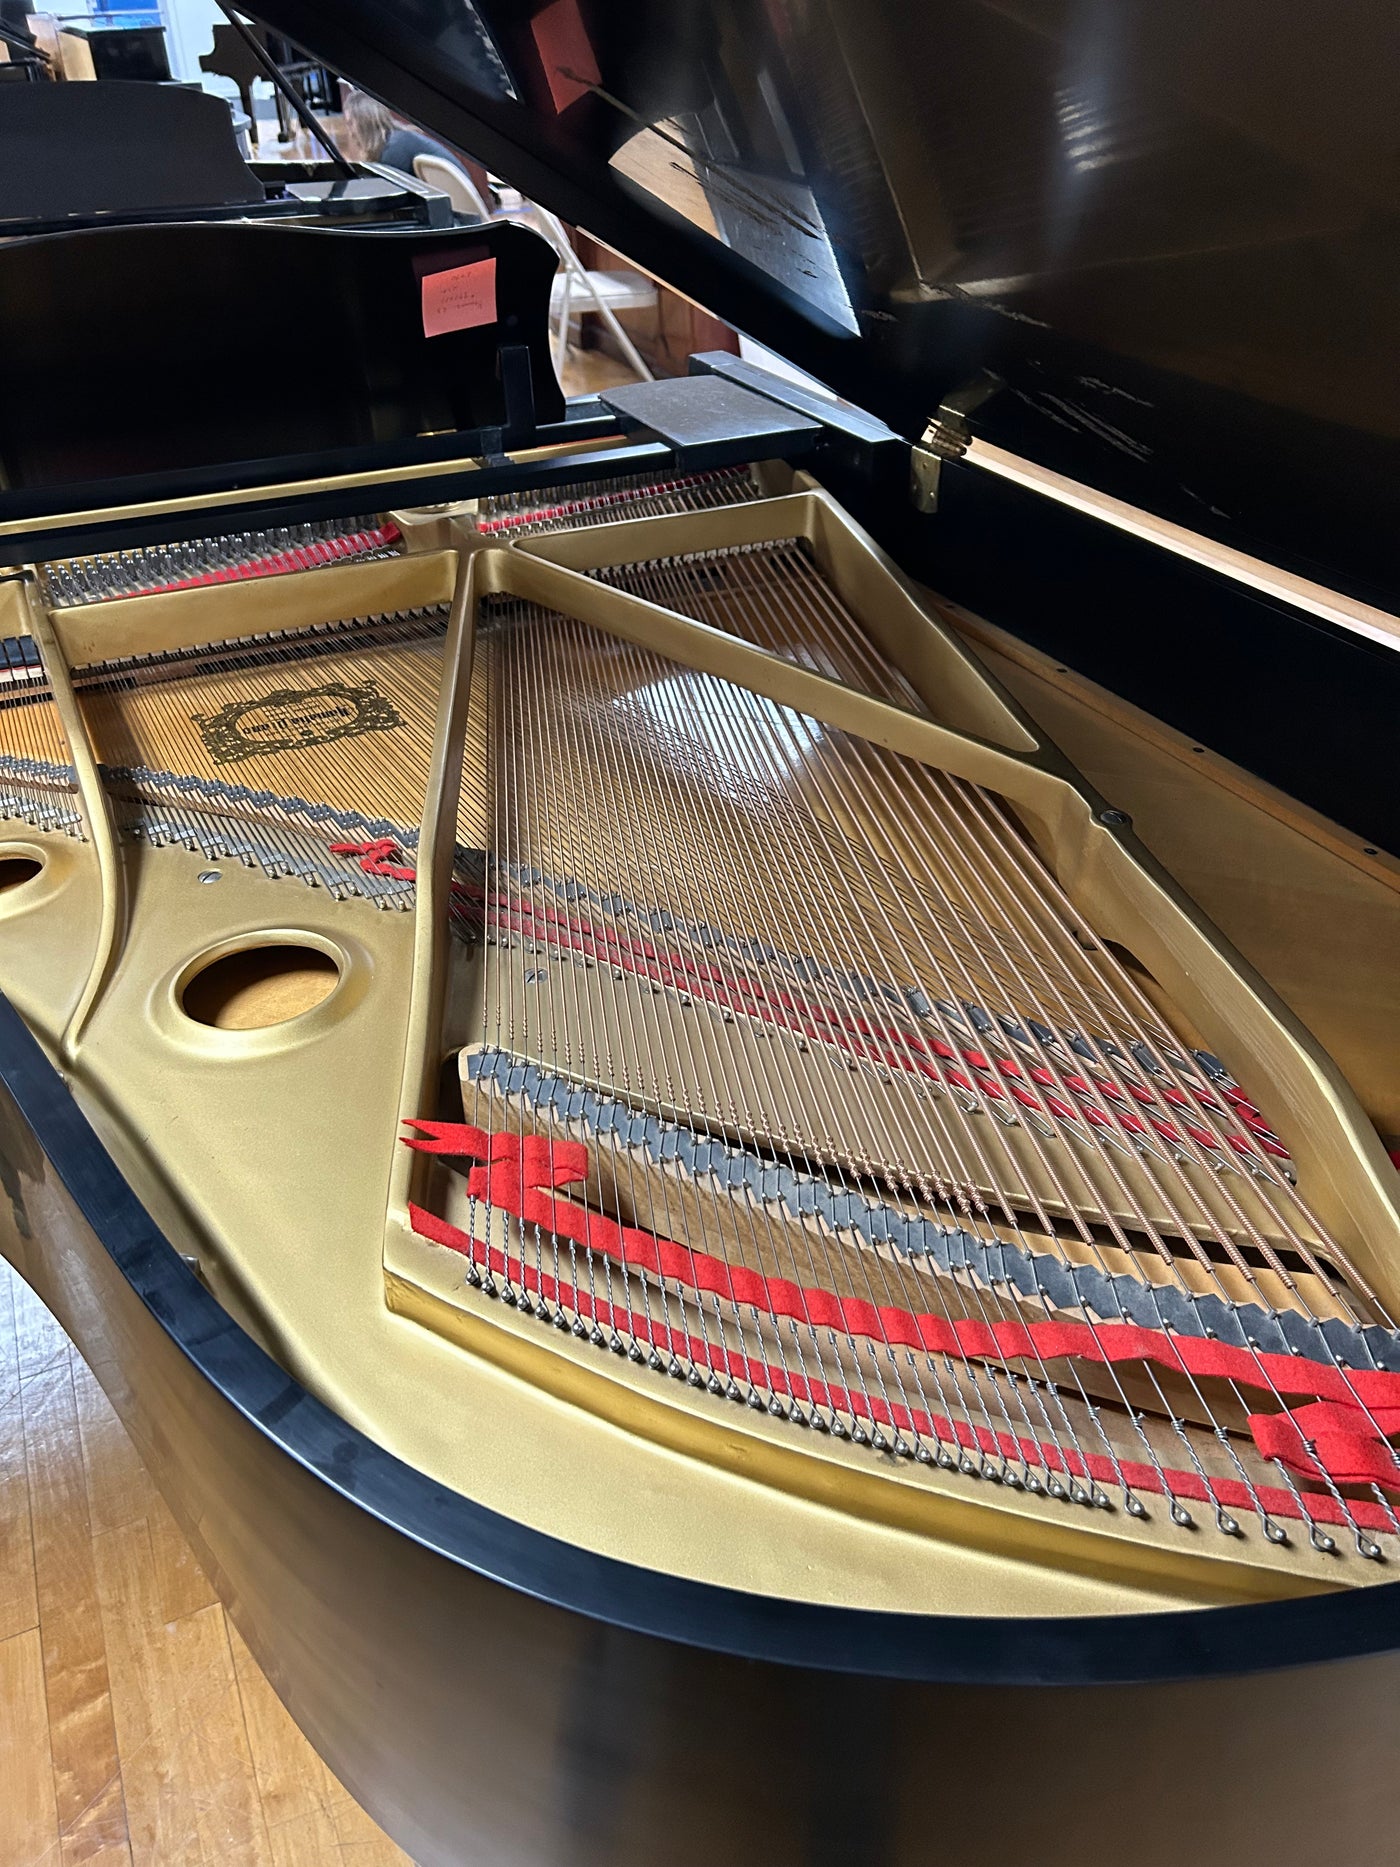 Yamaha 6'1" C3 Grand Piano | Satin Ebony | SN: 978480